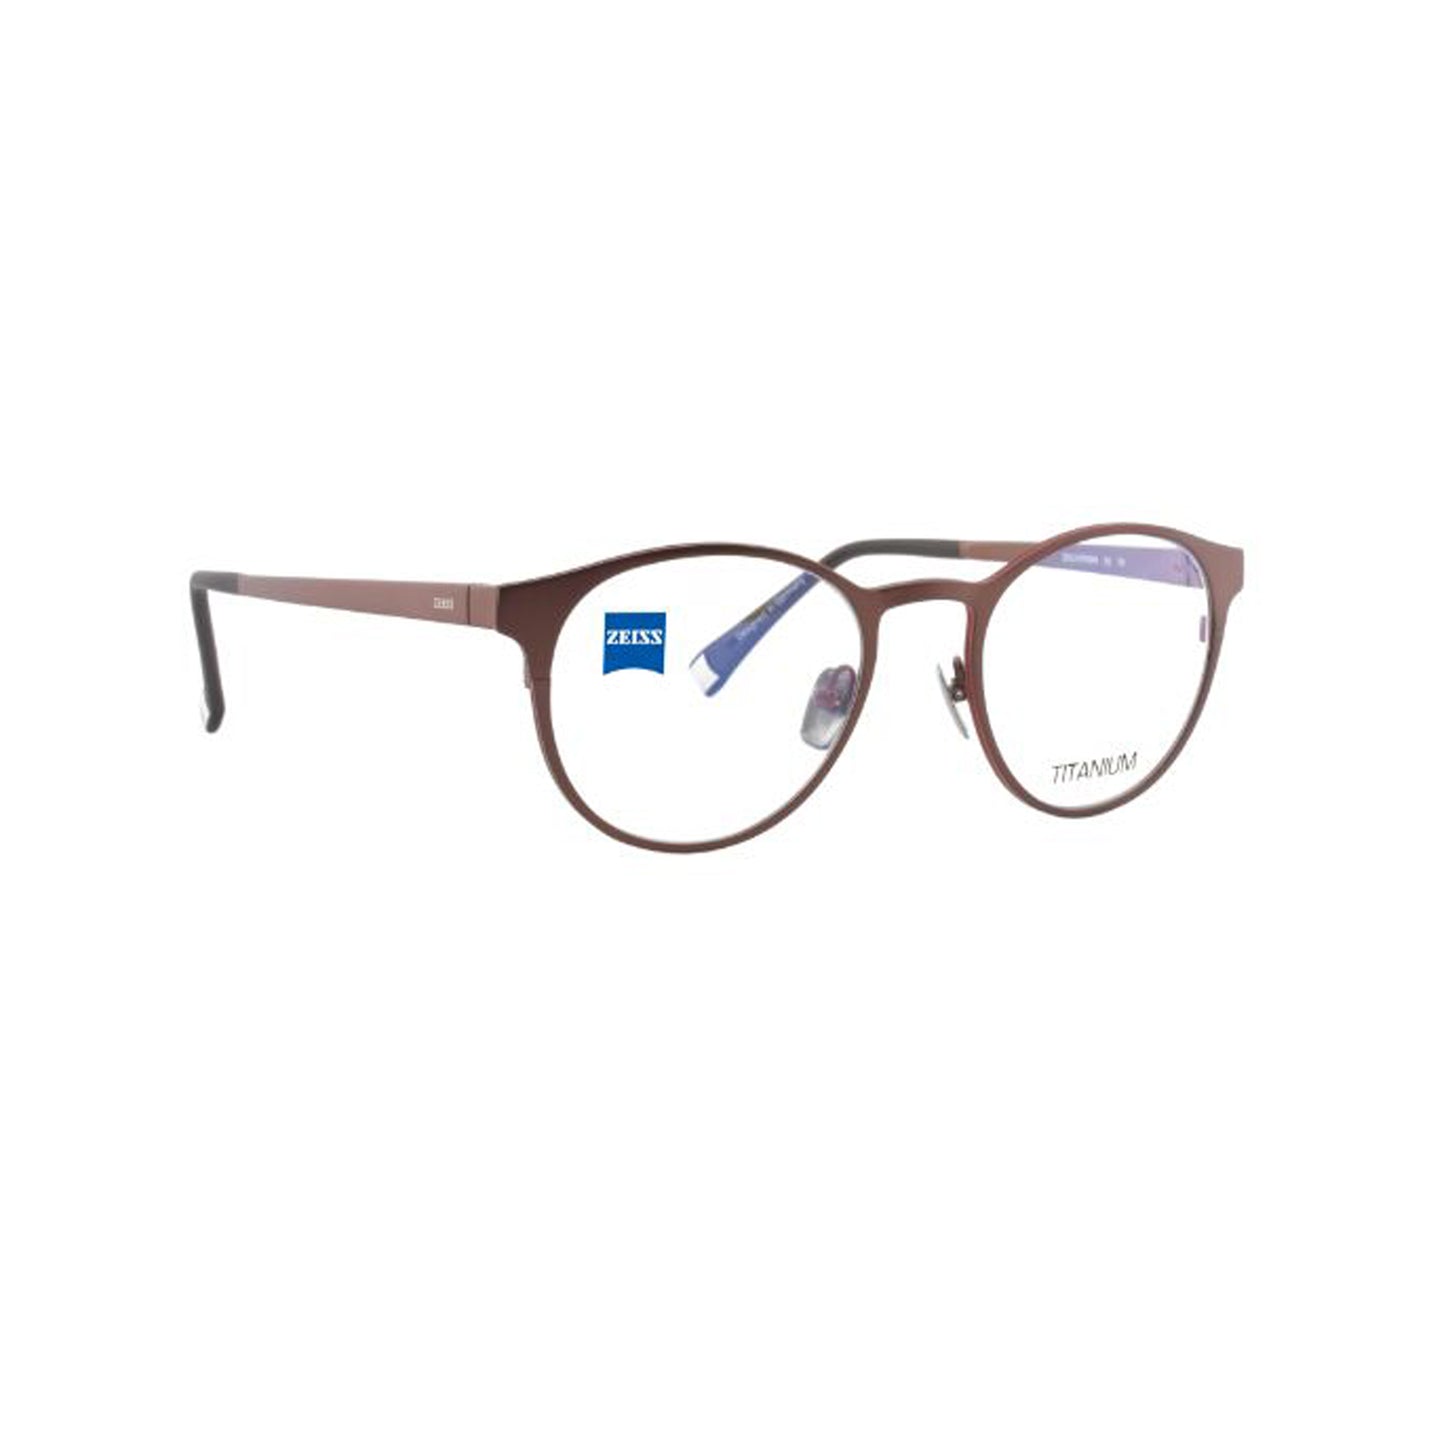 Zeiss Eyewear Brown Round Metal Full Rim Eyeglasses. Made in Germany ZS30010-Y21